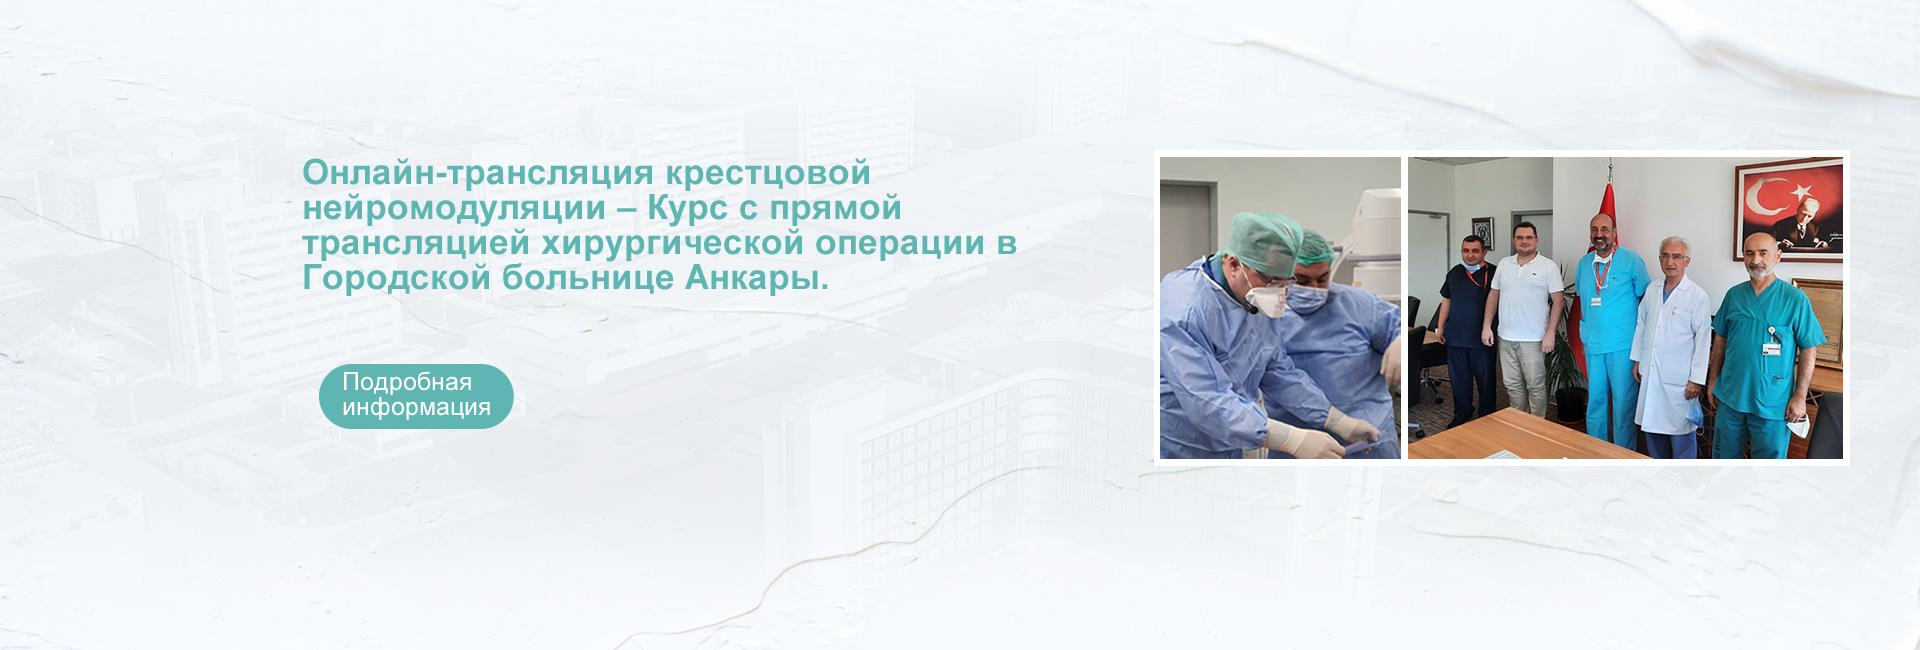 Онлайн-трансляция крестцовой нейромодуляции – Курс с прямой трансляцией хирургической операции в Городской больнице Анкары.